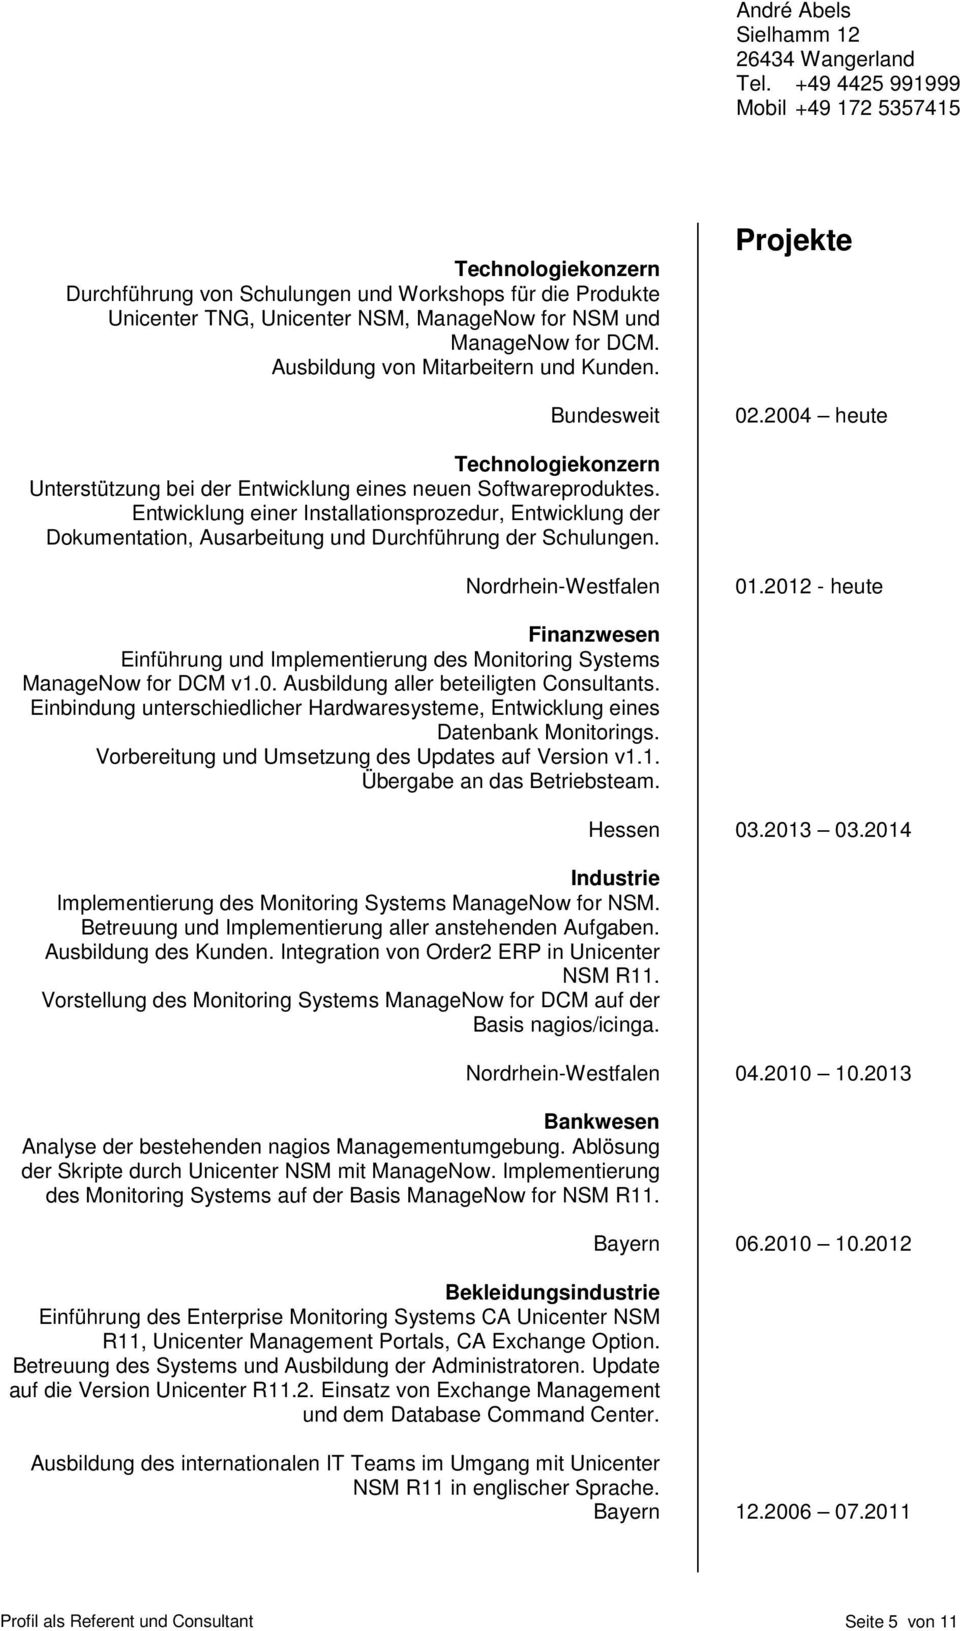 Entwicklung einer Installationsprozedur, Entwicklung der Dokumentation, Ausarbeitung und Durchführung der Schulungen. Fujitsu - Nordrhein-Westfalen 01.